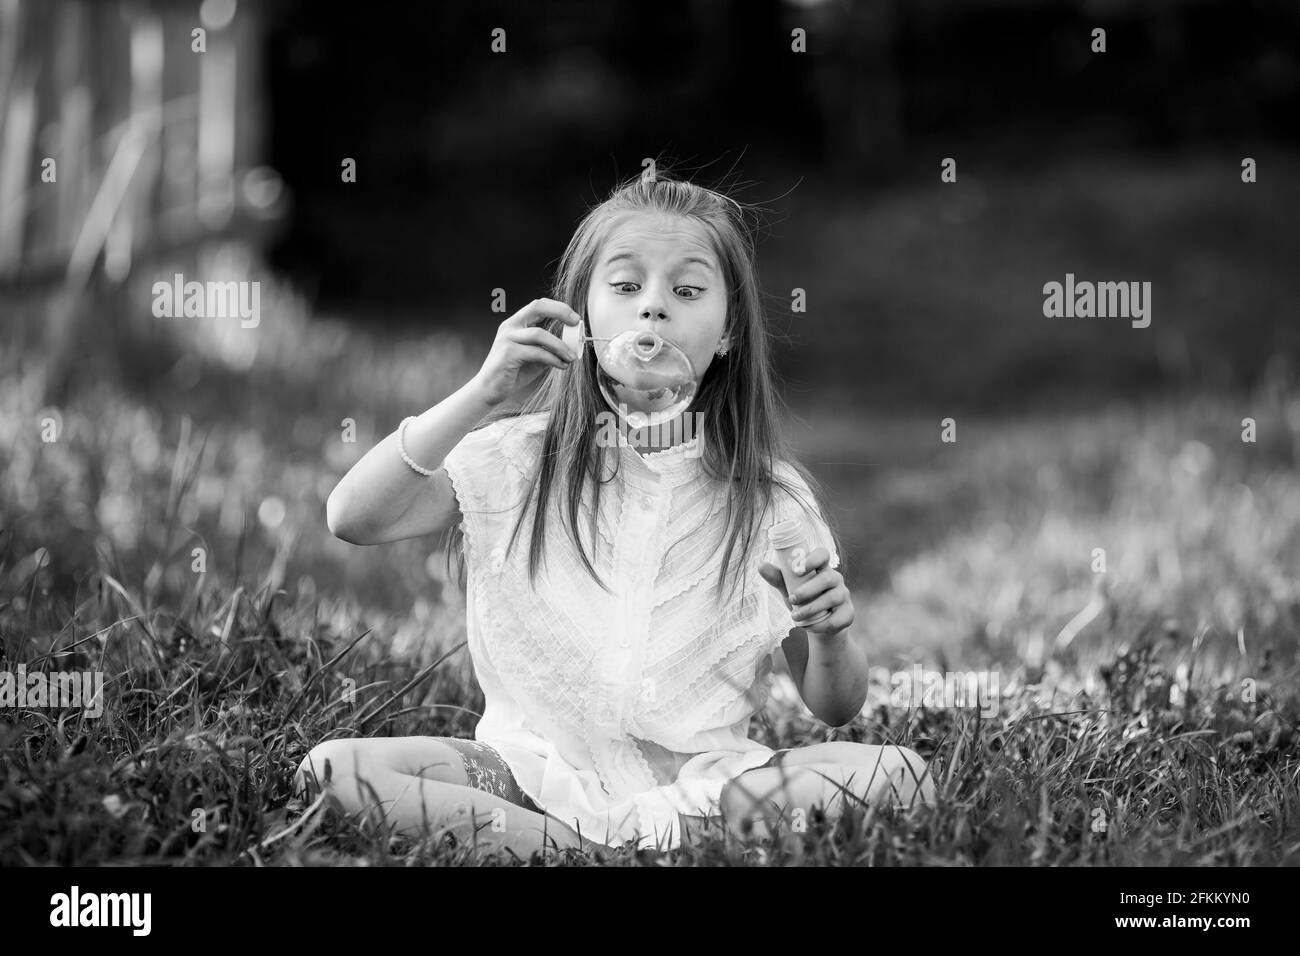 Ein kleines Mädchen bläst im Freien emotional Seifenblasen auf. Schwarzweiß-Foto. Stockfoto